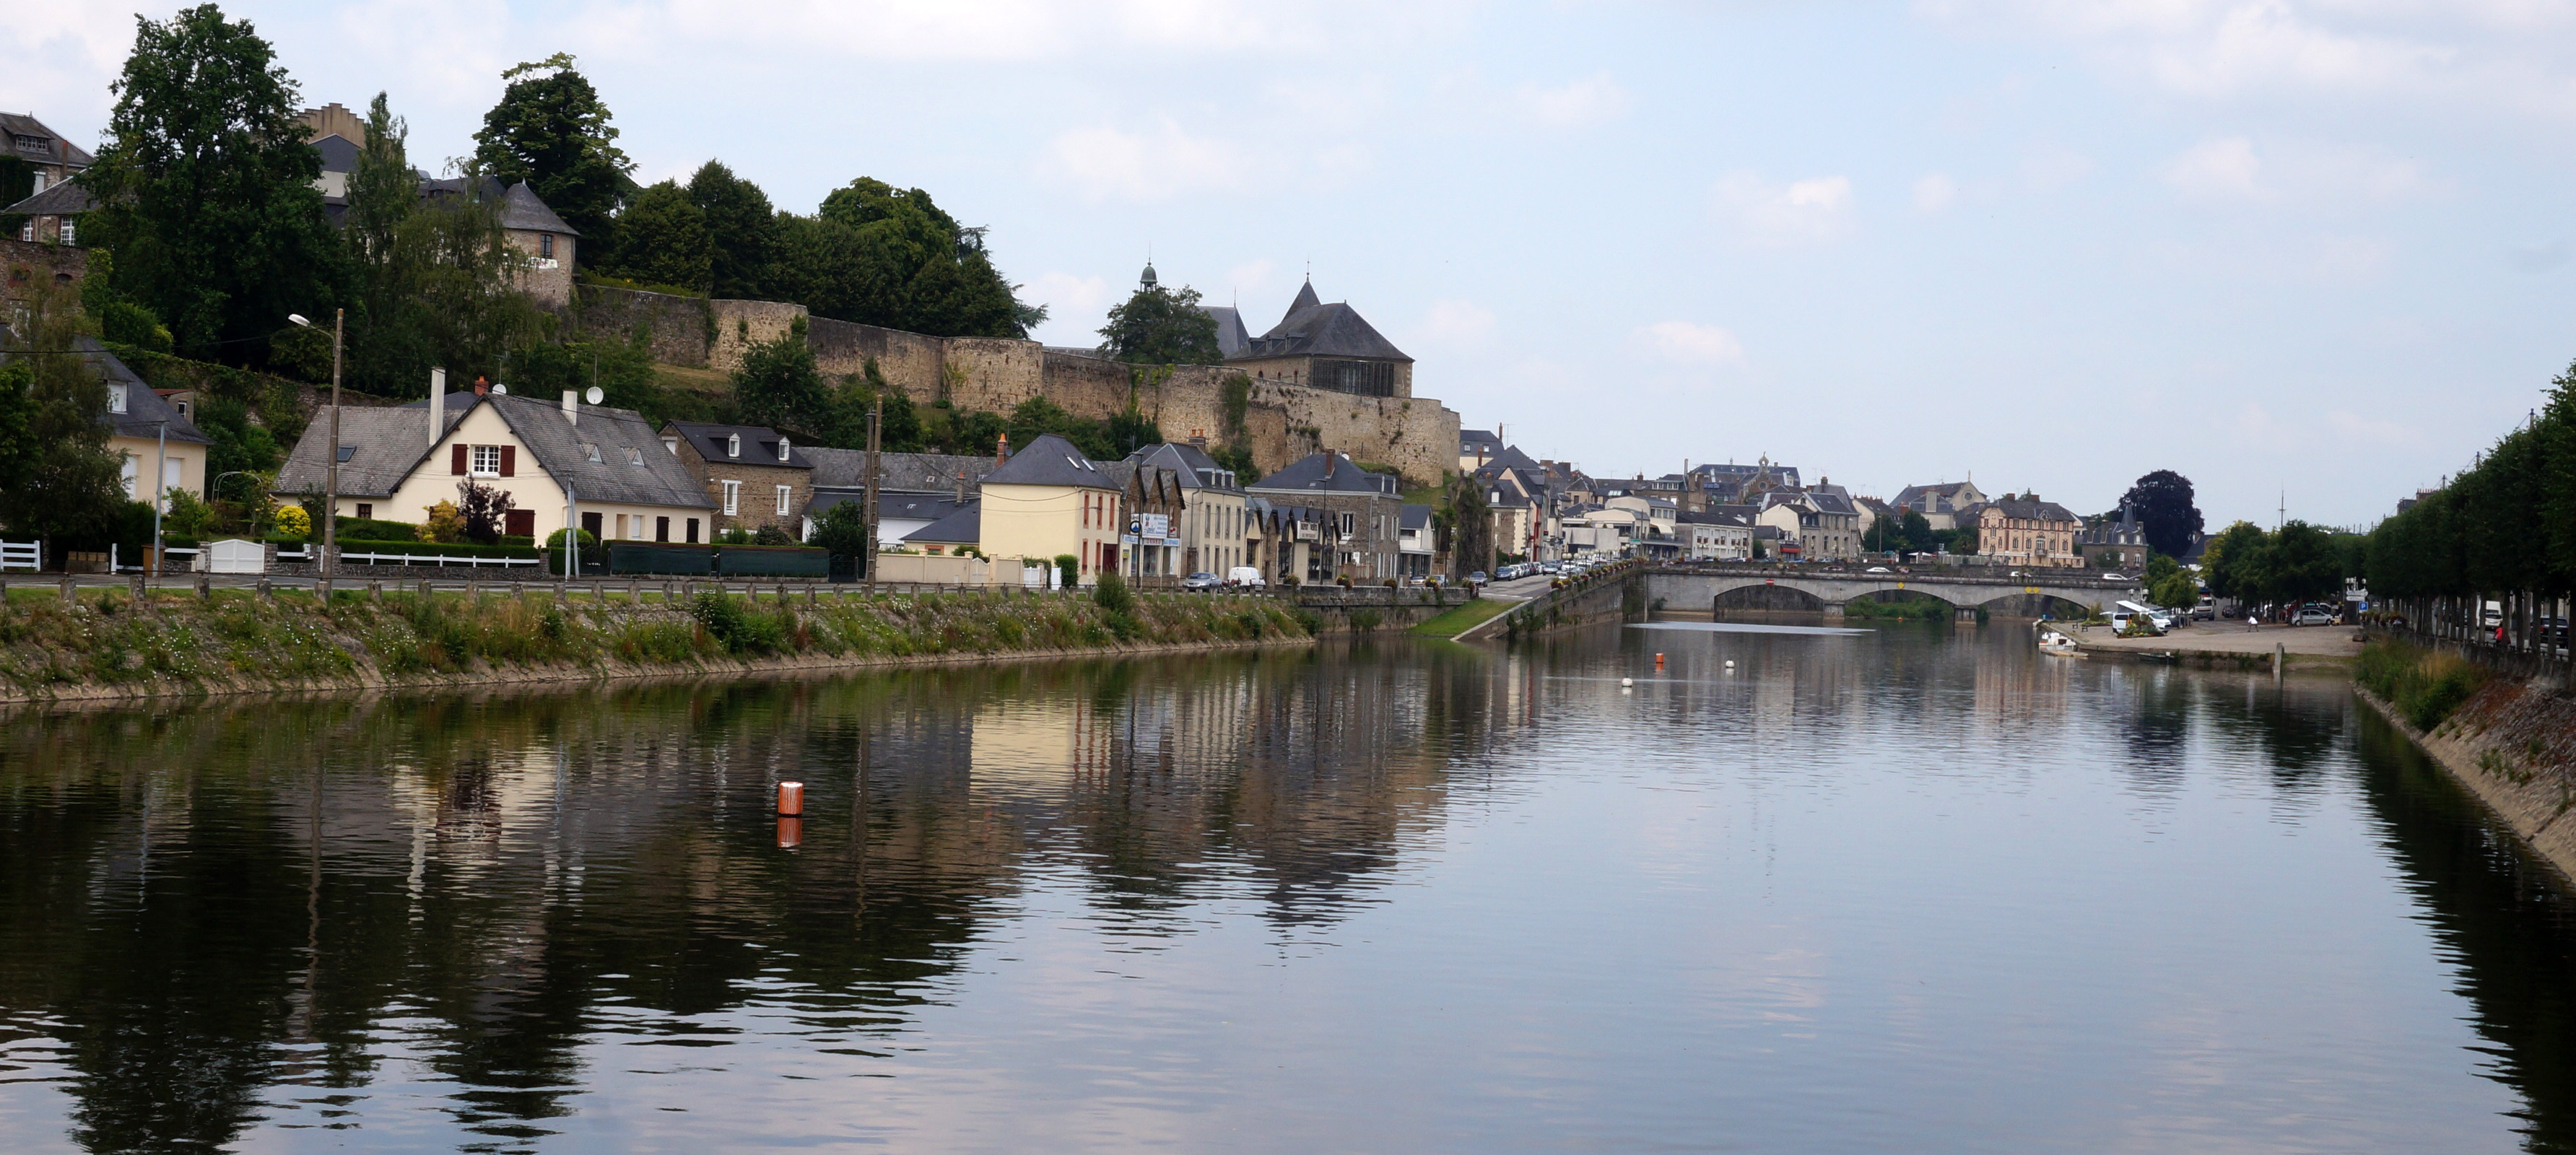 Paysage urbain patrimonial de Mayenne s'étageant sur la vallée (Mayenne) en grand format (nouvelle fenêtre)